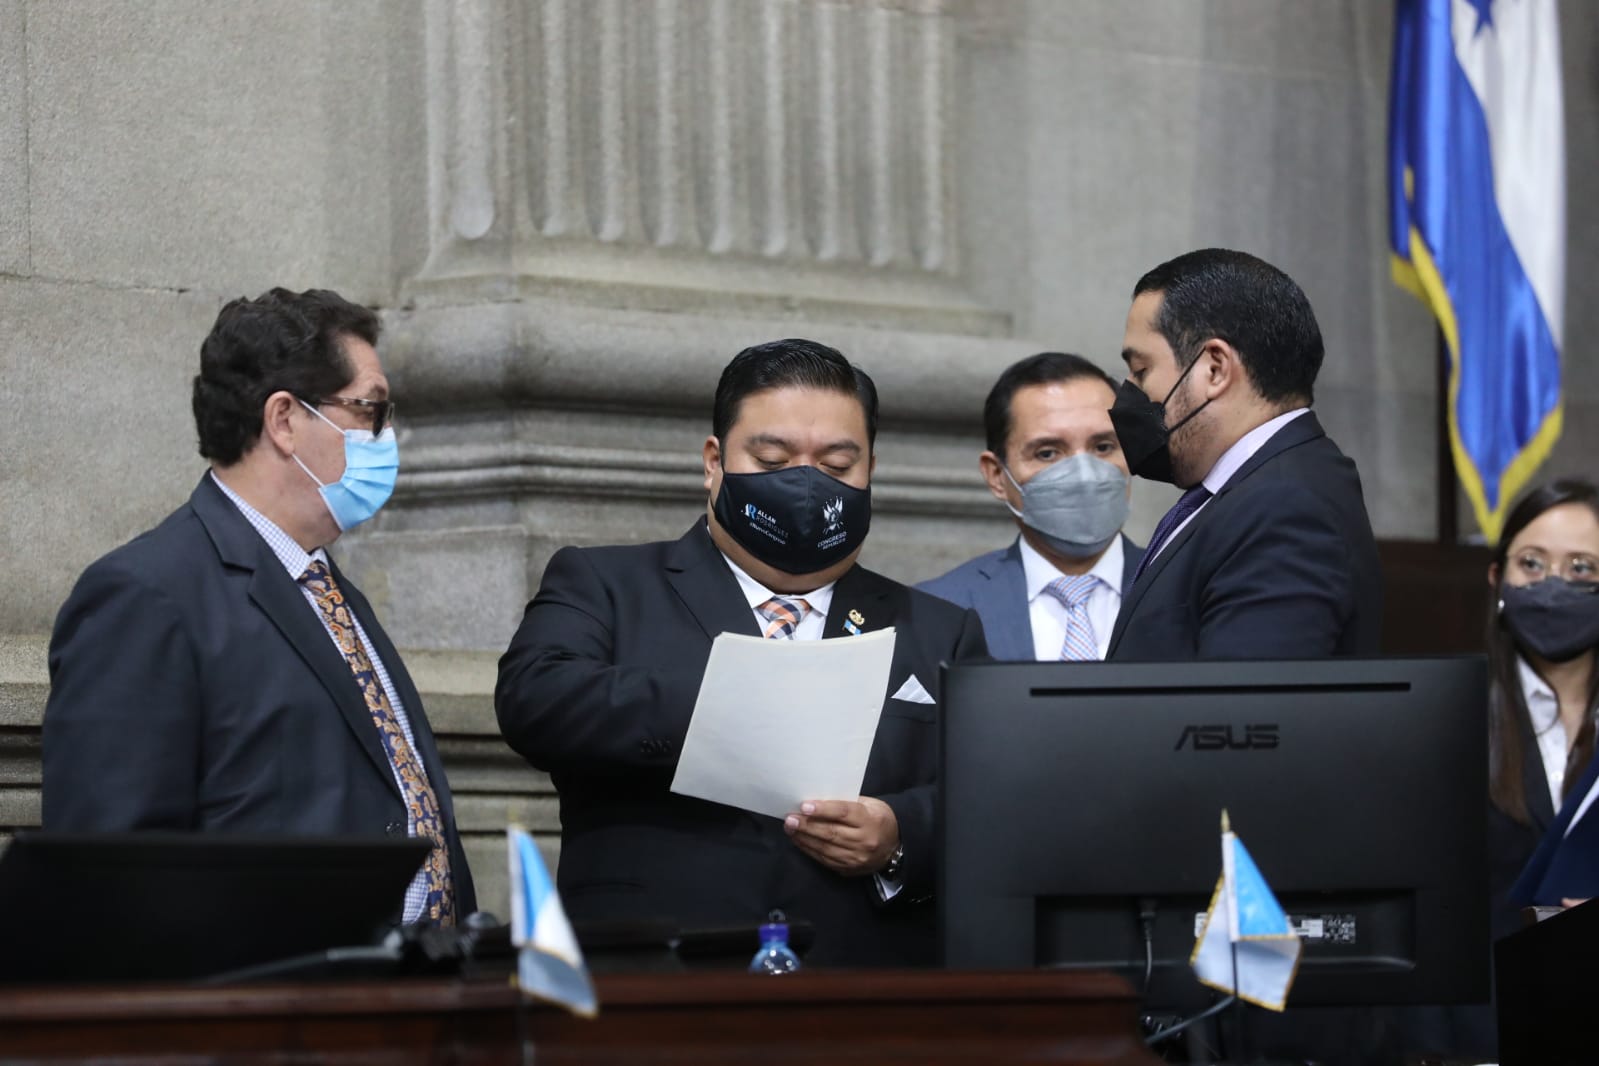 El presidente del Congreso, Allan Rodríguez, convocó el pasado fin de semana a los Jefes de Bloque del Congreso para afinar la propuesta legal. Fotografía: Congreso. 